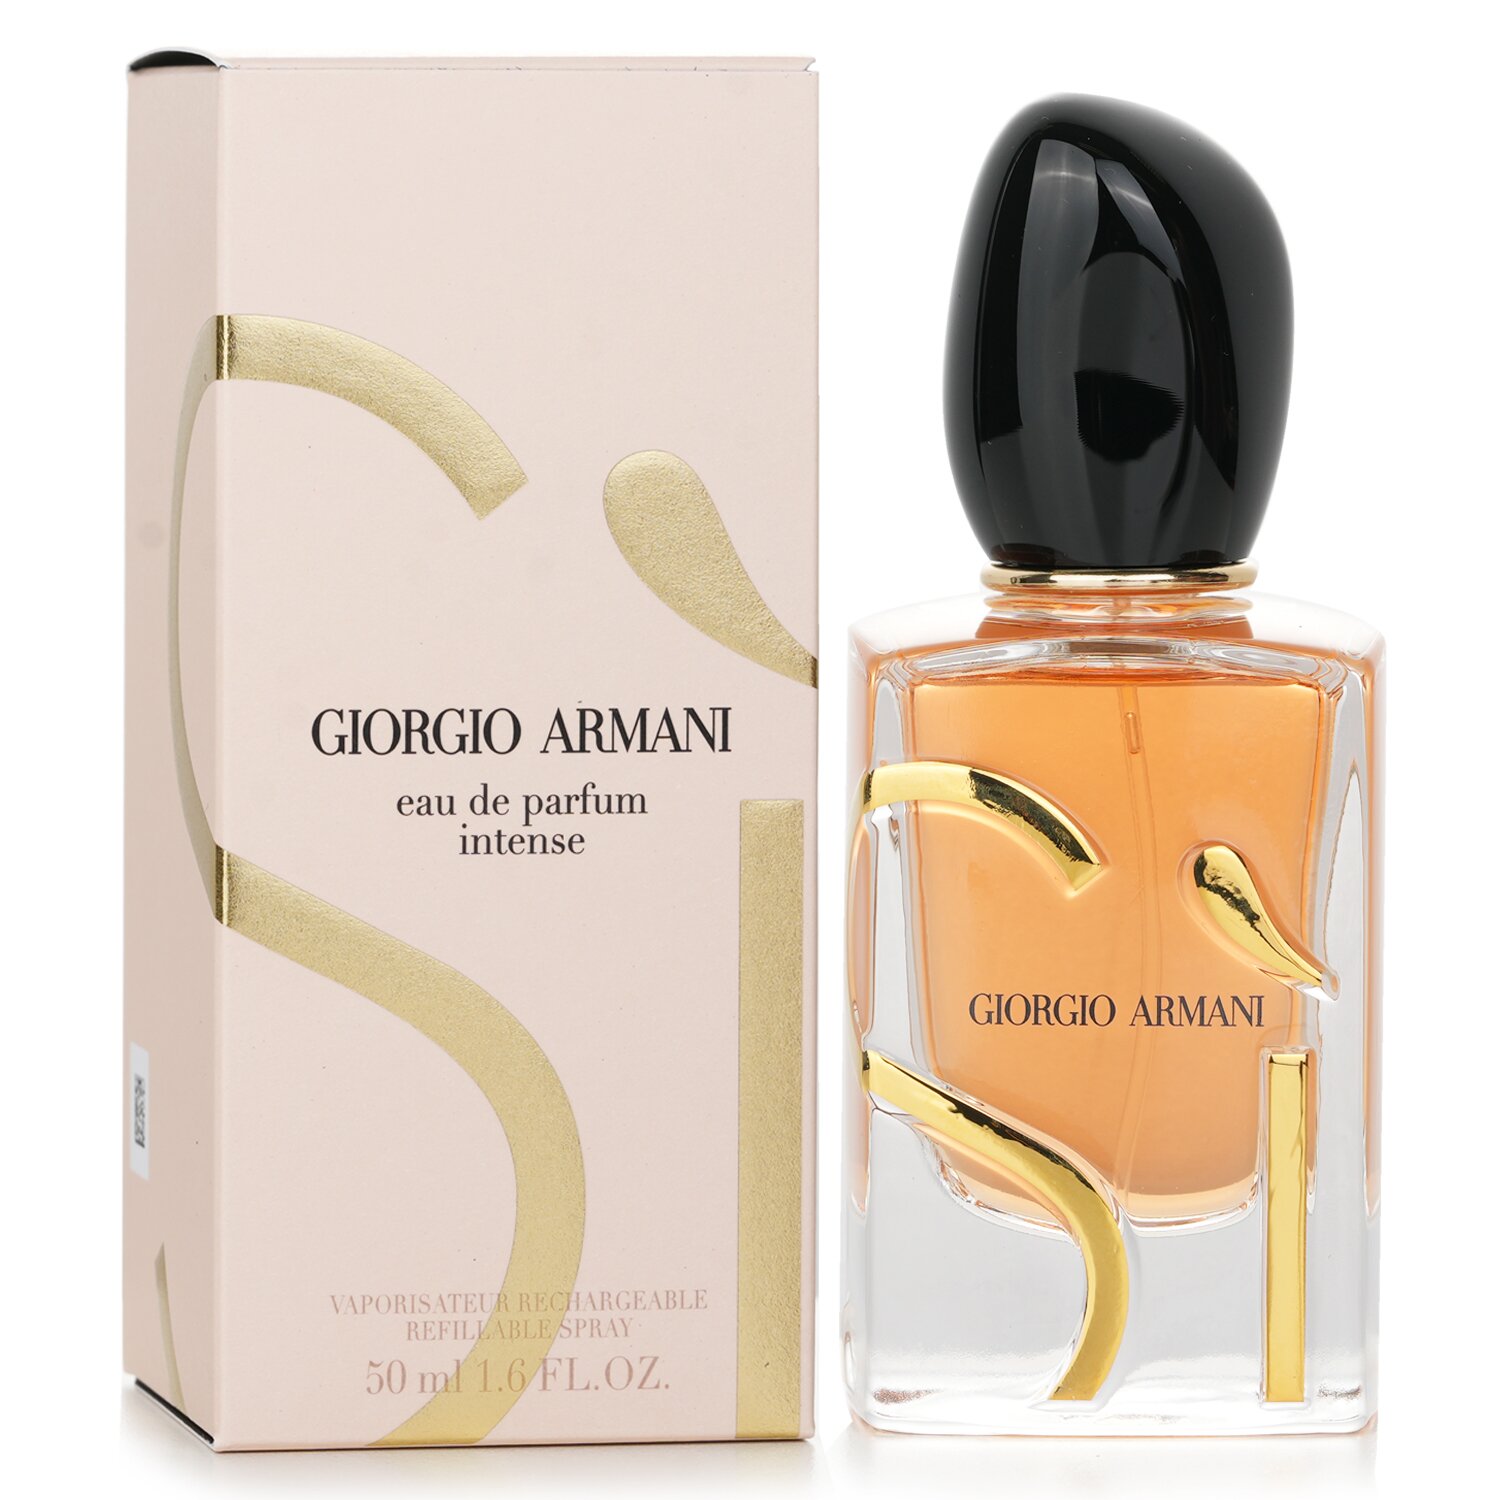 Armani - Si Eau de Parfum Intense vaporisateur rechargeable 50 ml